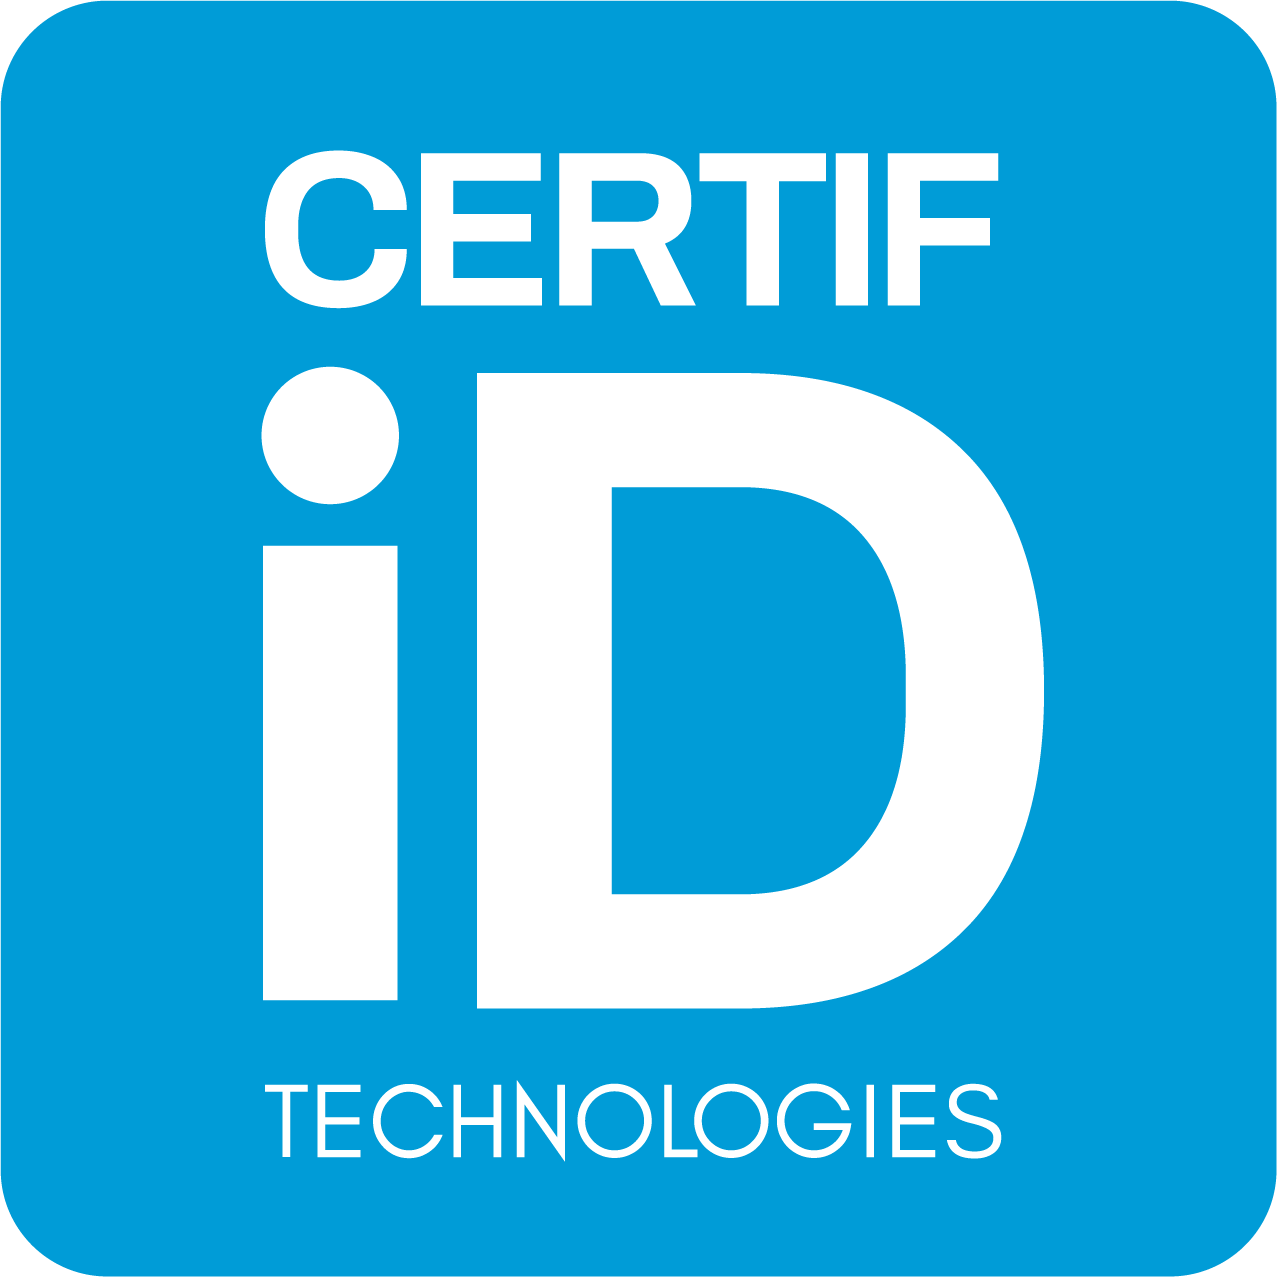 Certif-ID